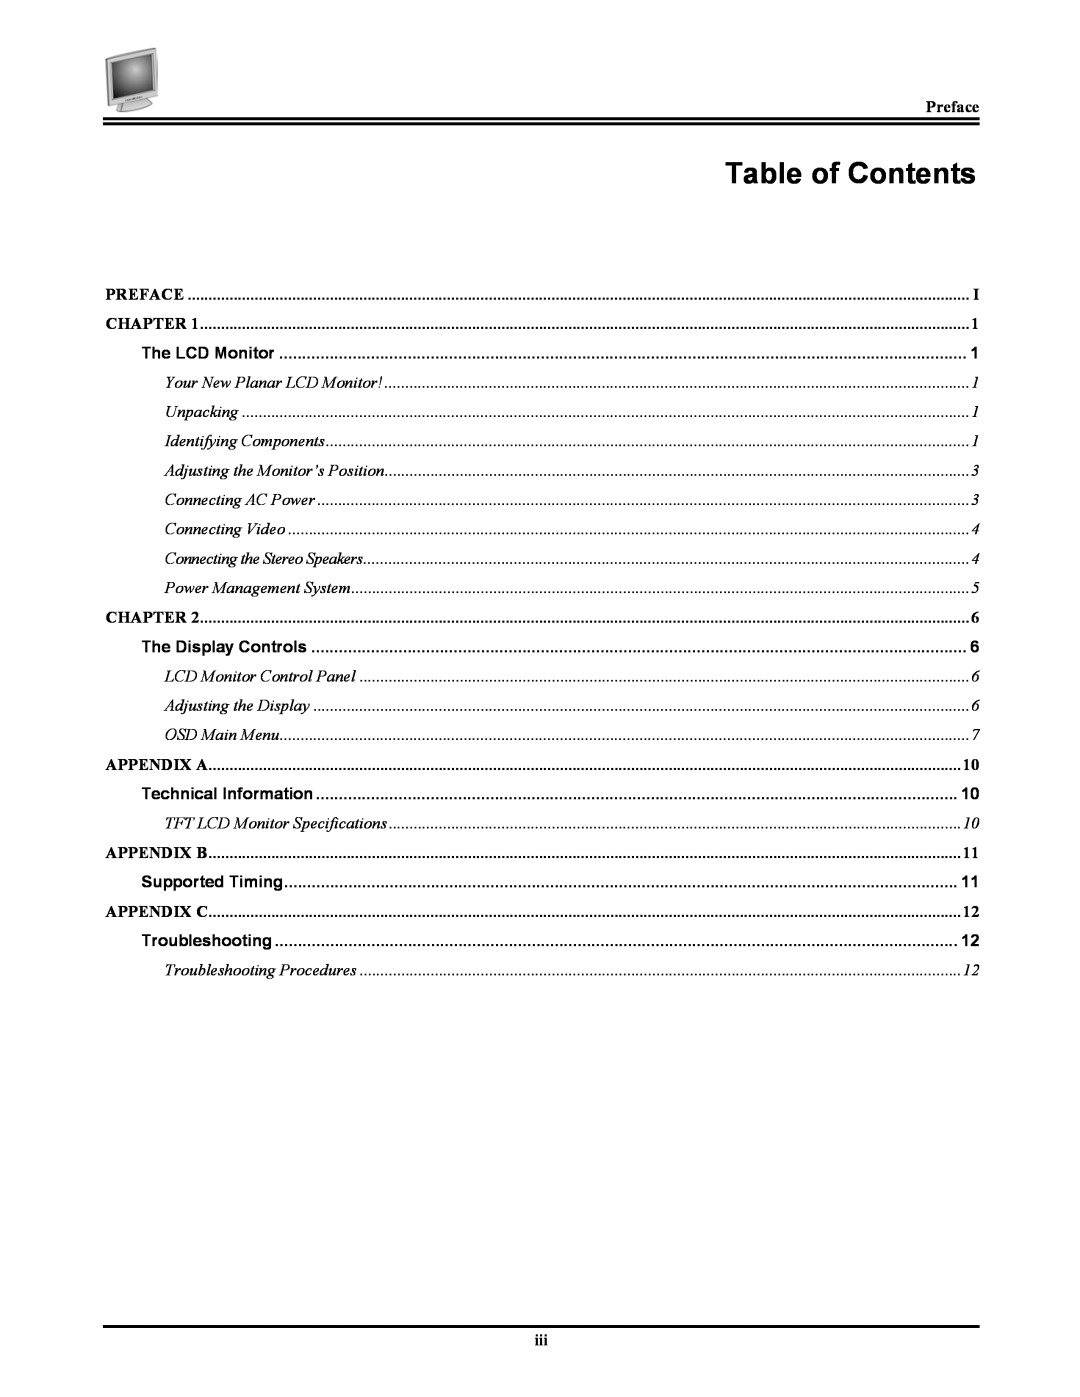 Planar FWT1744NU manual Table of Contents, Preface, Chapter, Appendix A, Appendix B, Appendix C 